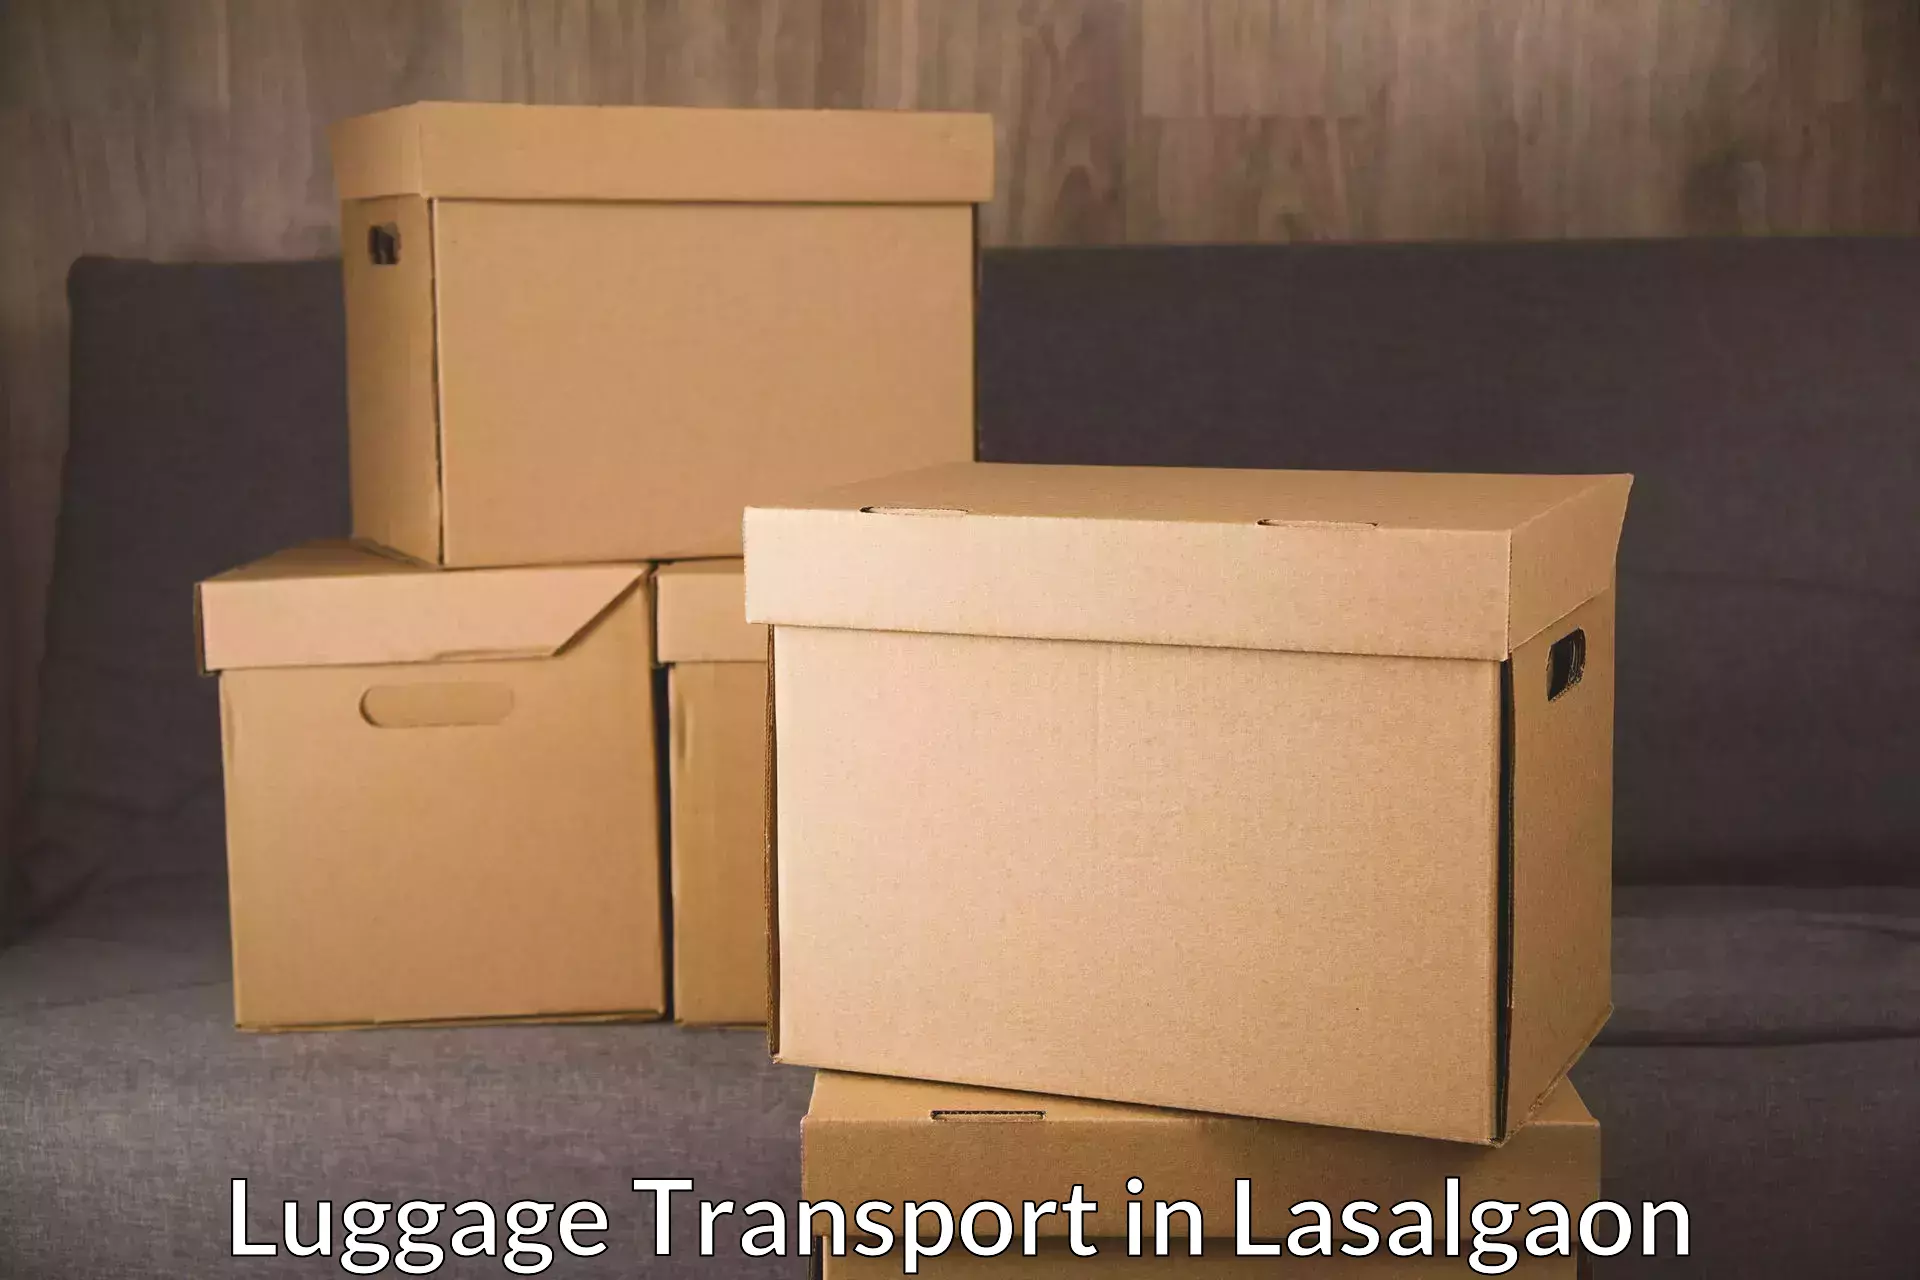 Corporate baggage transport in Lasalgaon